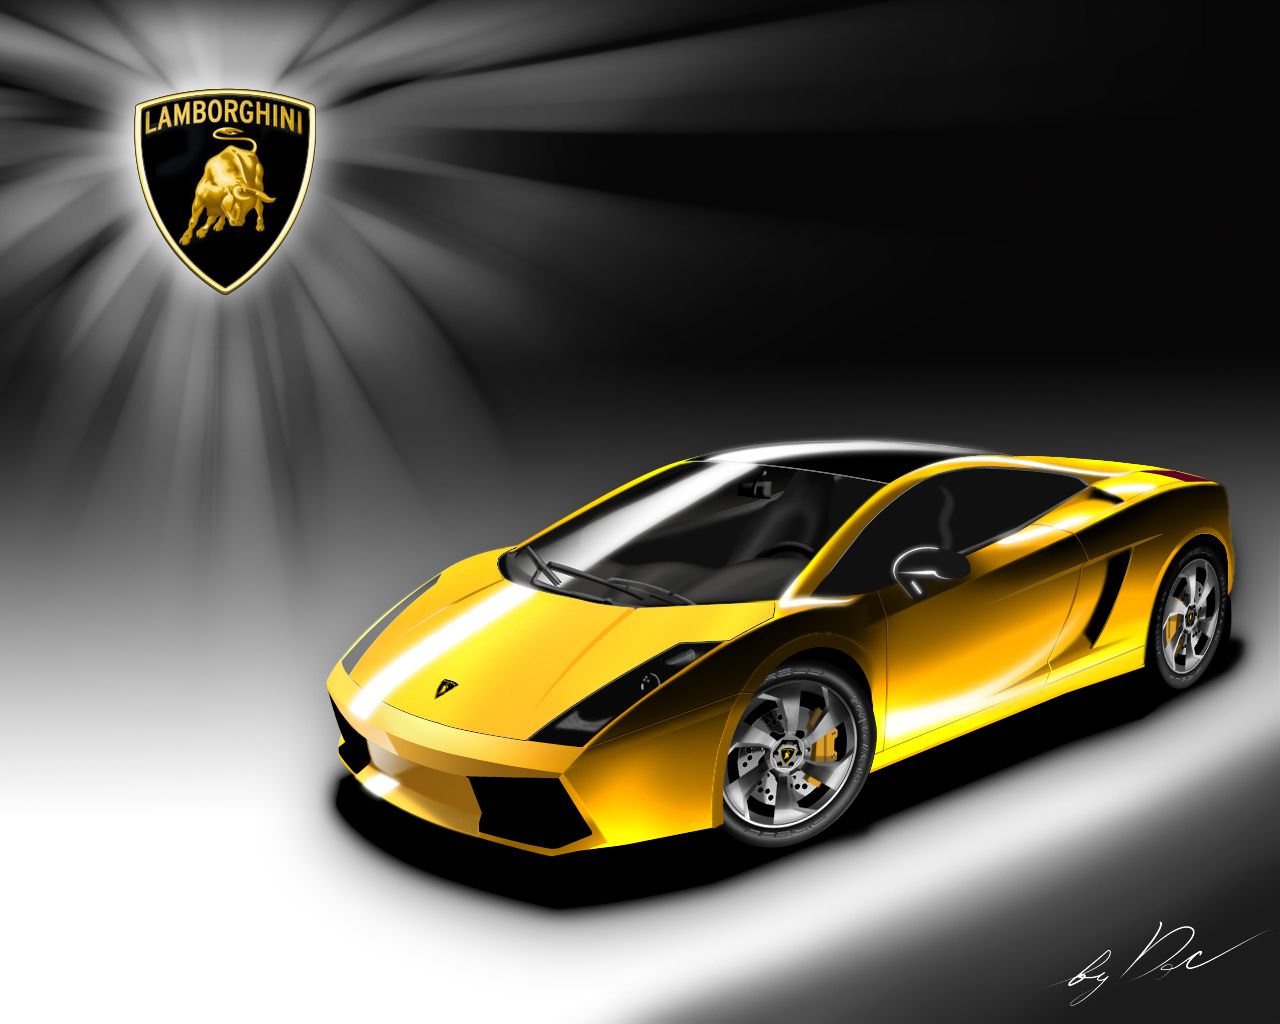 Lamborghini Wallpaper Download Free